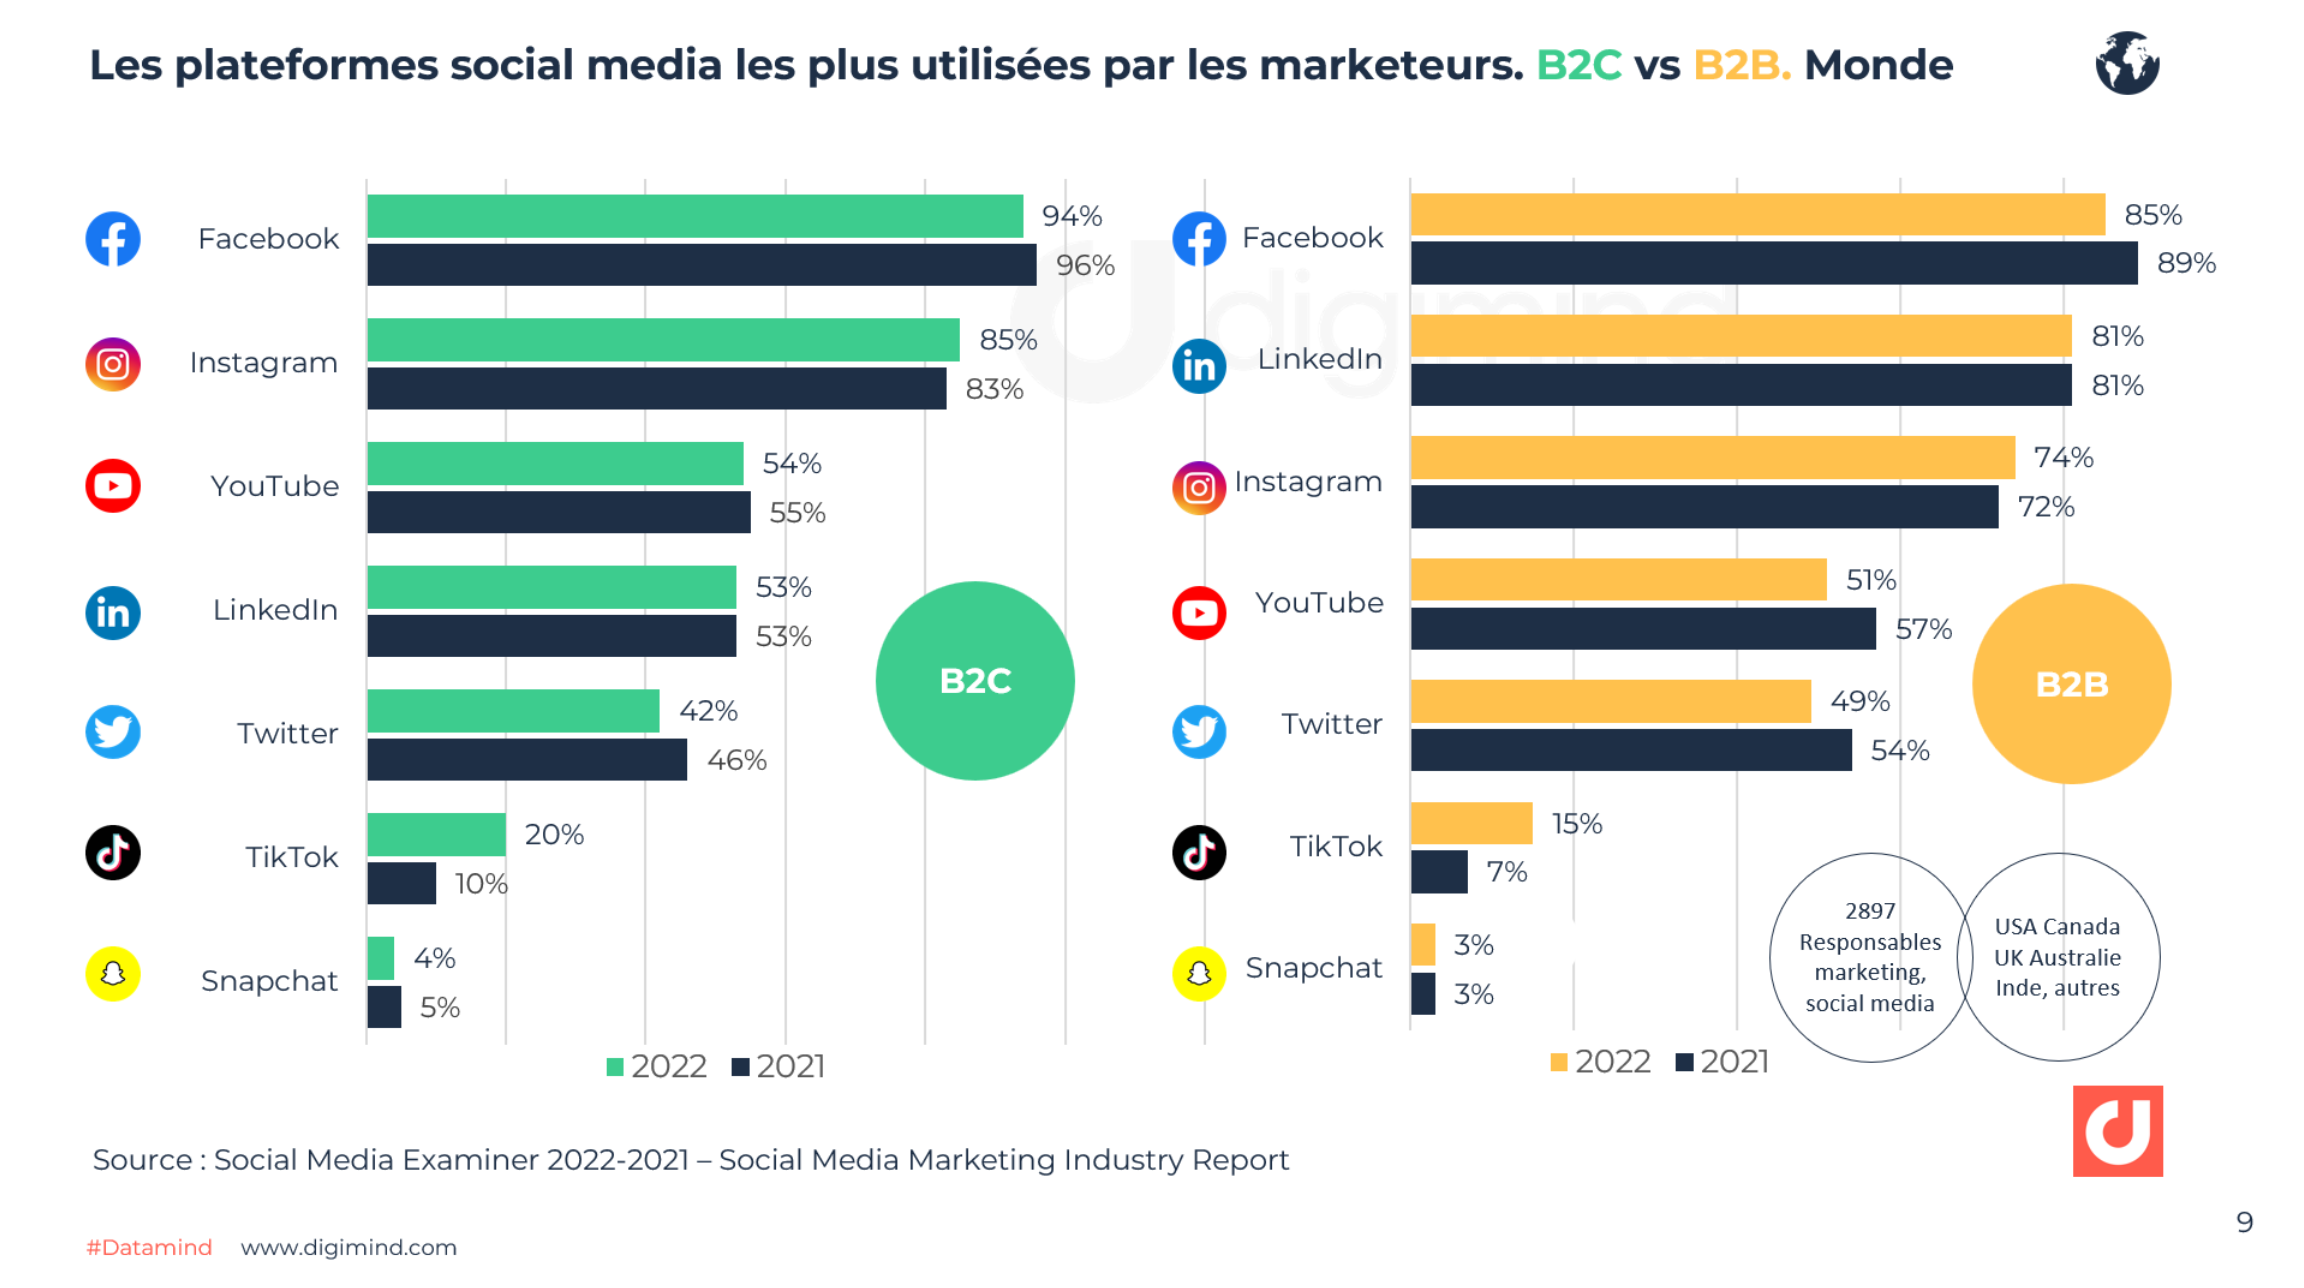 Les plateformes social media les plus utilisées par les marketeurs : B2C vs B2B en 2022 et 2021 (USA, Canada, Royaume-Uni)